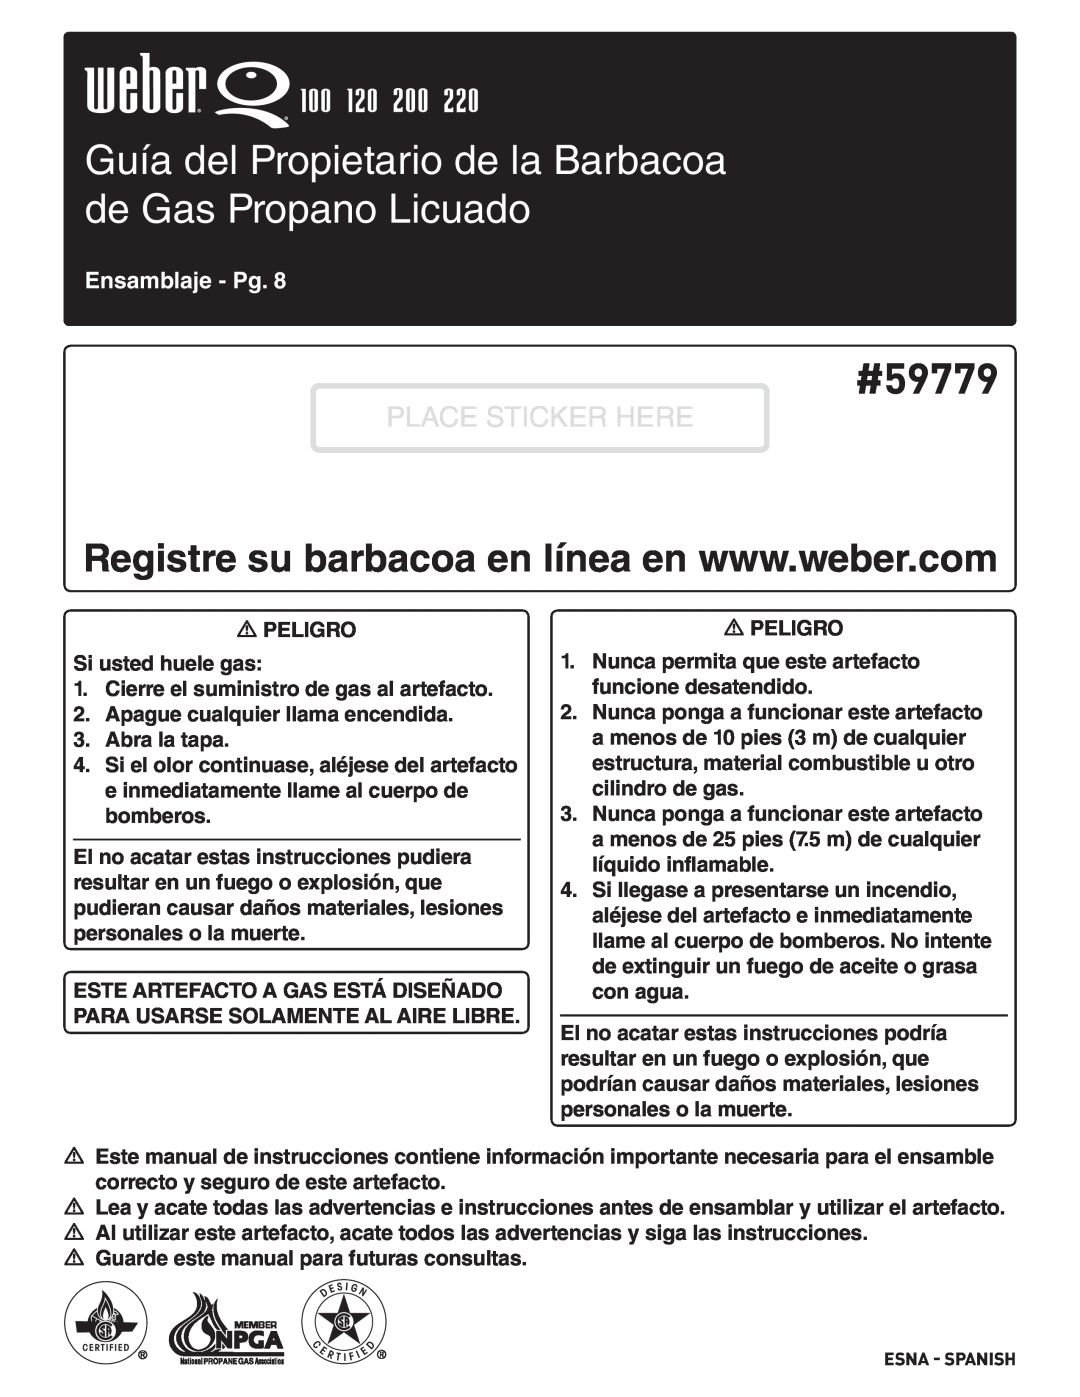 Weber 827020, 100 Guía del Propietario de la Barbacoa de Gas Propano Licuado, #59779, Place Sticker Here, Ensamblaje - Pg 